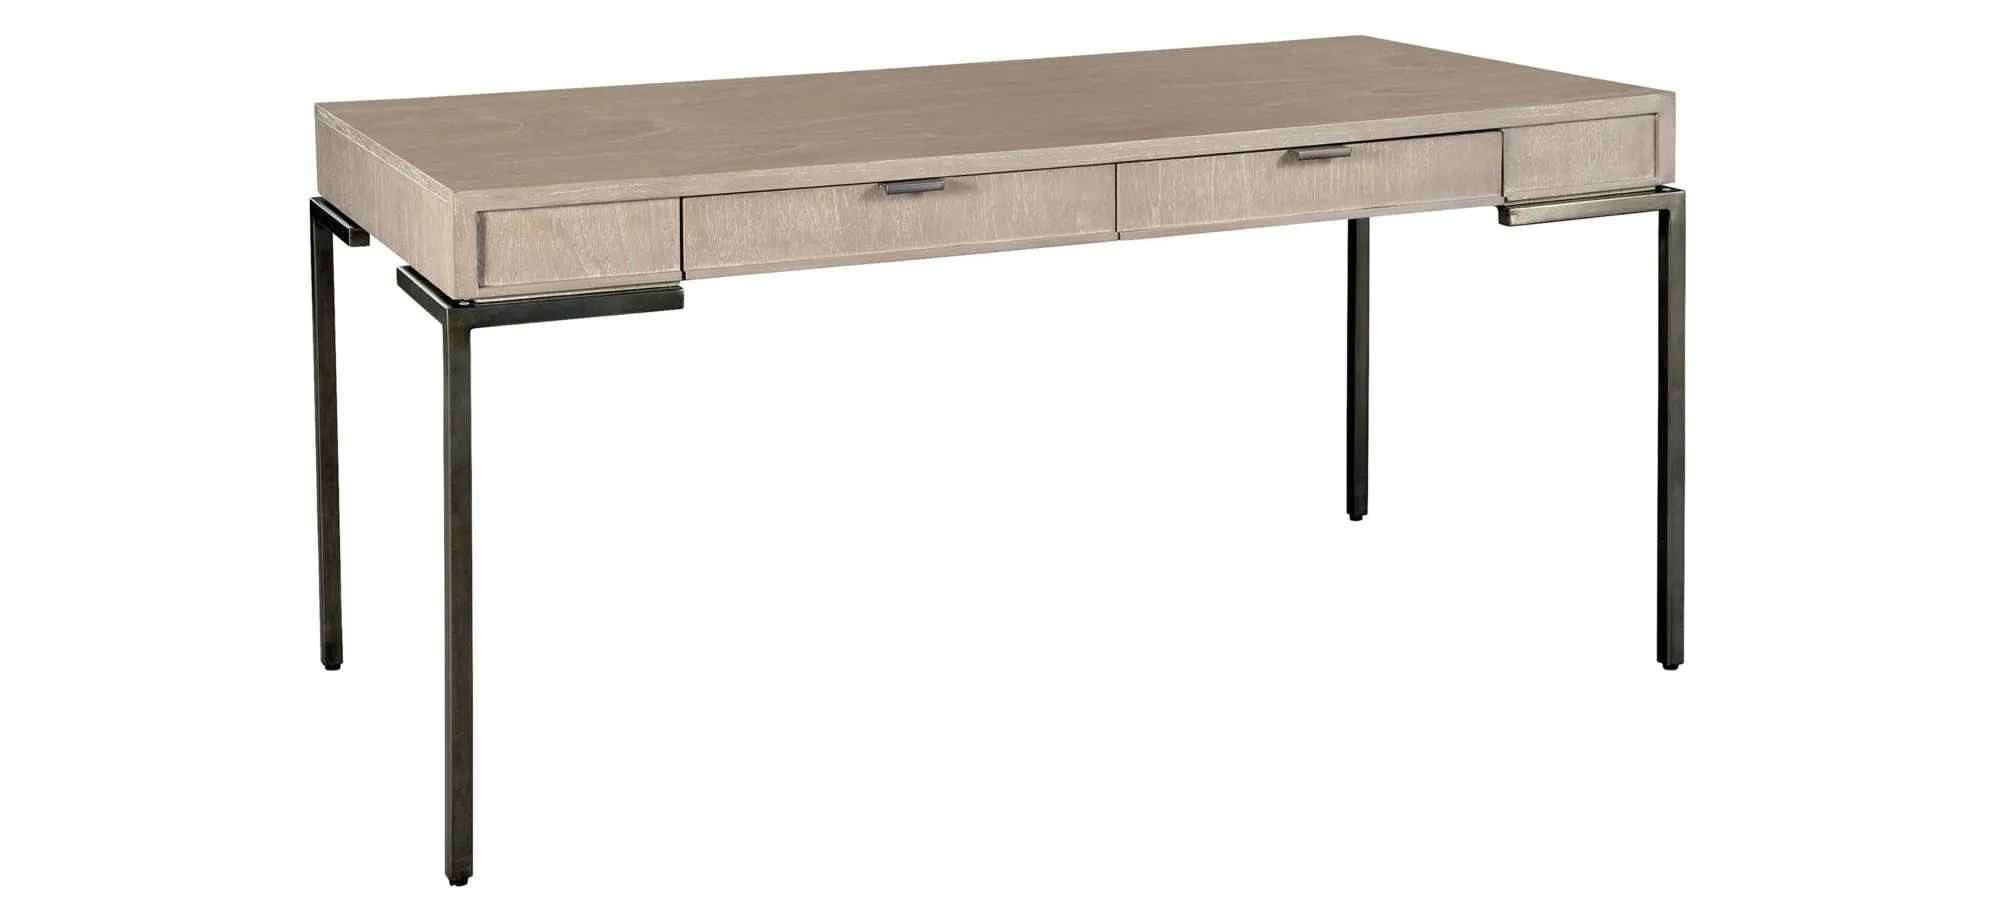 Hekman Desk in SCOTTSDALE by Hekman Furniture Company